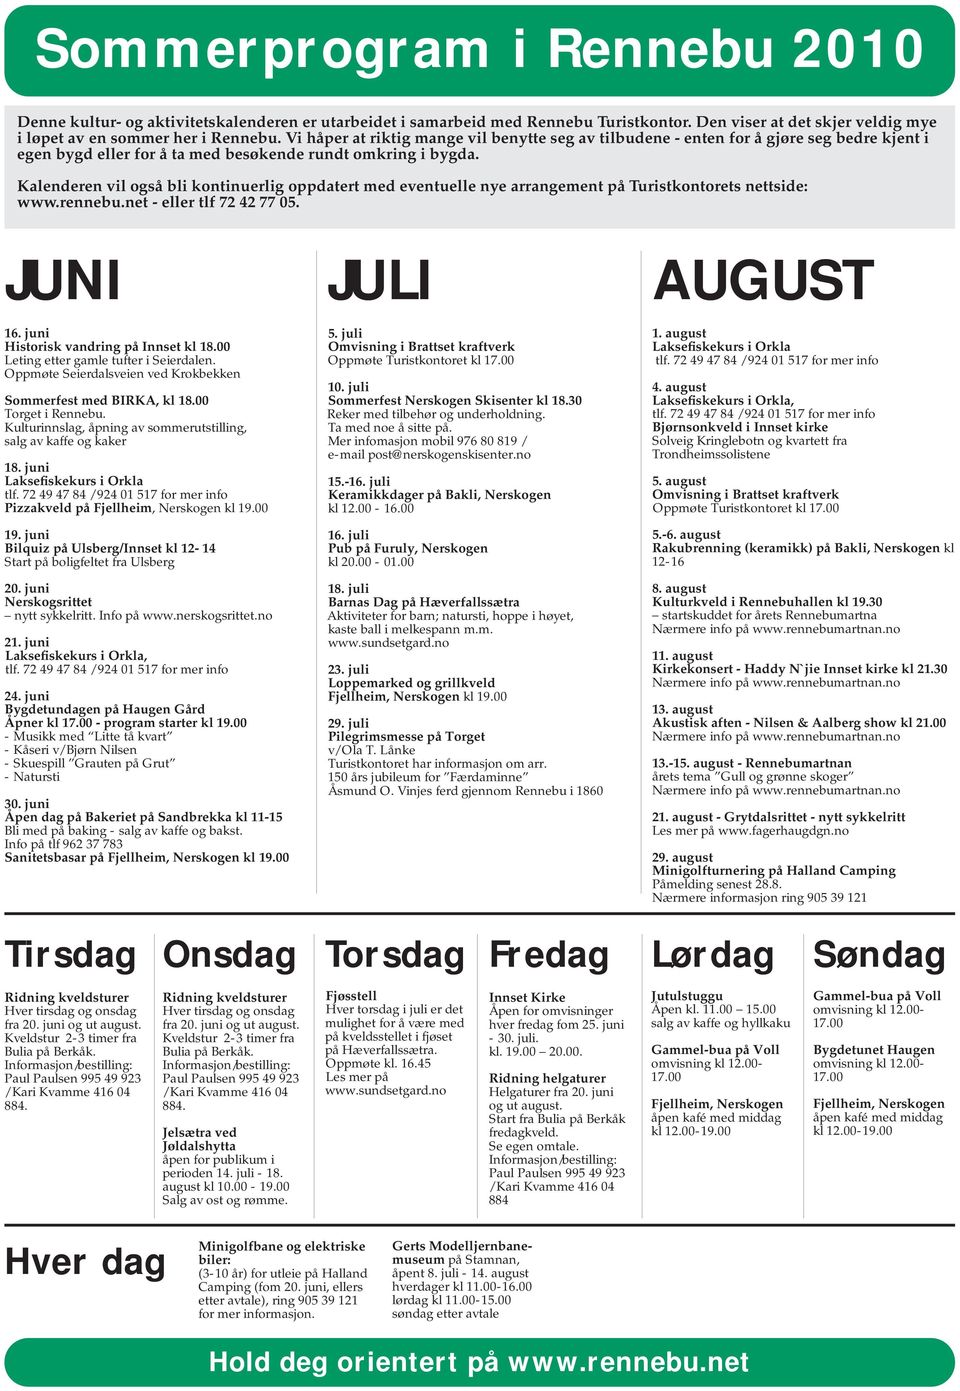 Kalenderen vil også bli kontinuerlig oppdatert med eventuelle nye arrangement på Turistkontorets nettside: www.rennebu.net - eller tlf 72 42 77 05. JUNI JULI AUGUST 16.